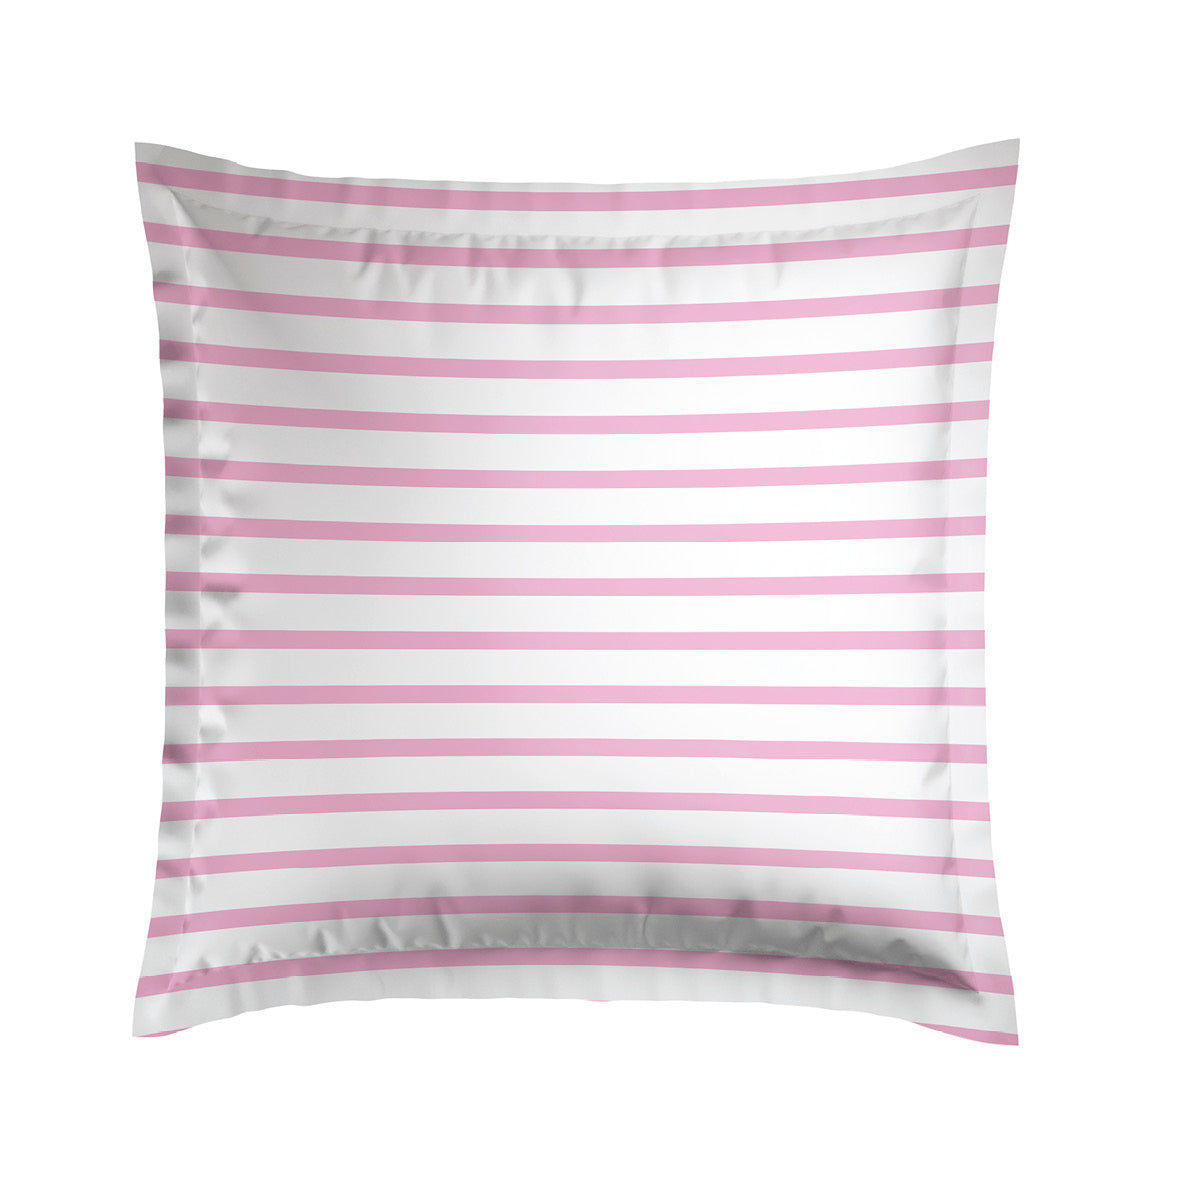 Pillowcase(s) cotton satin - Horizon Pink 2 x (63 x 63 cm)